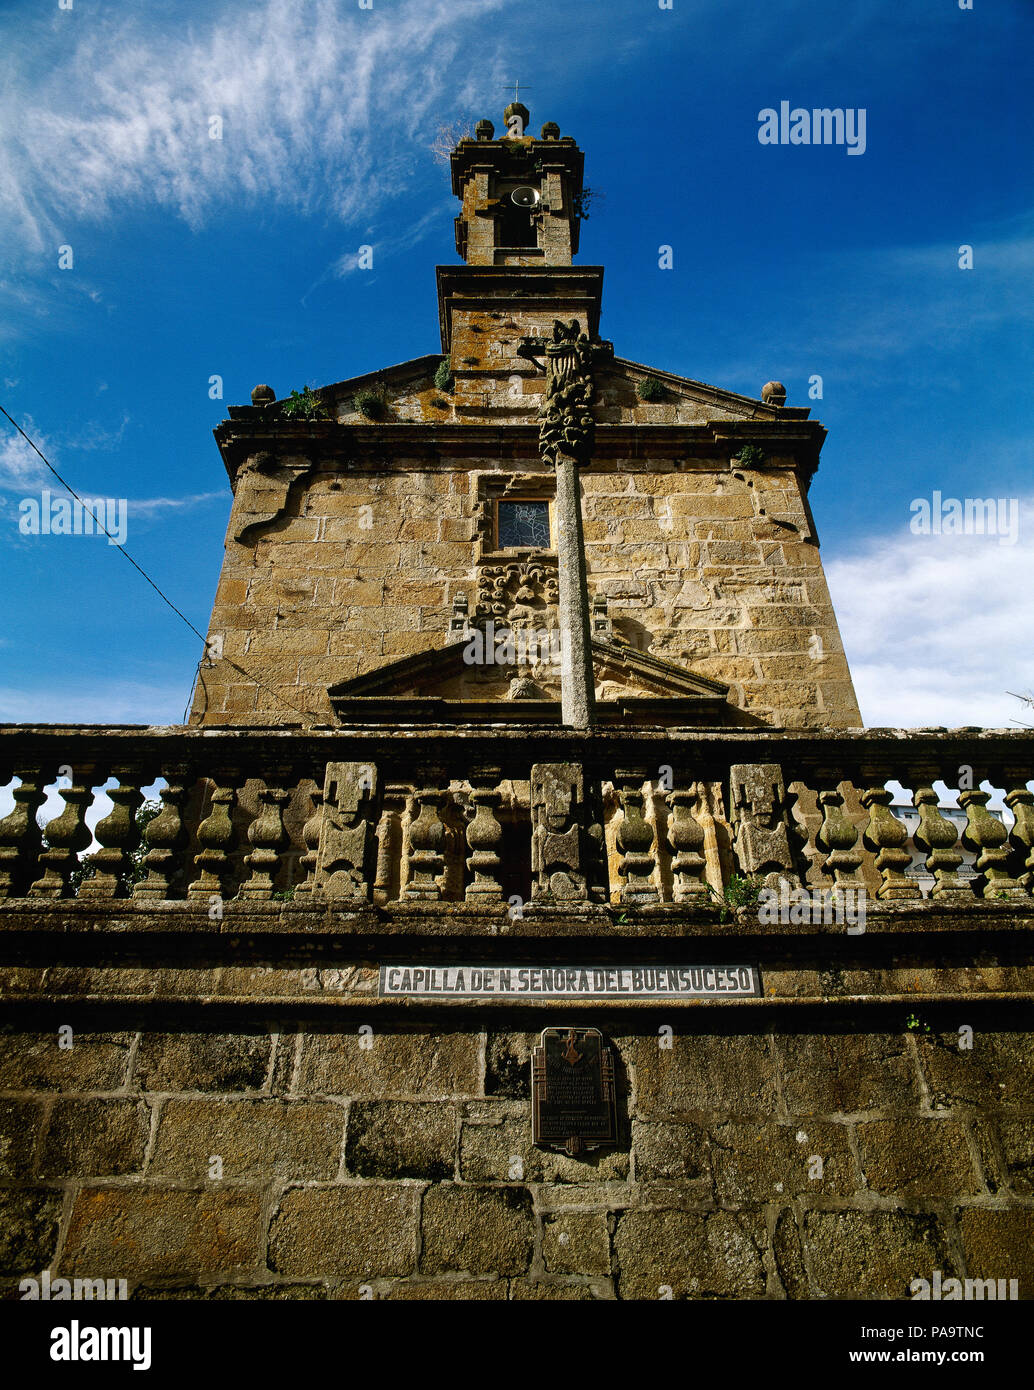 Spagna, Galizia, La Coruña provincia Fisterra. Buen Suceso Cappella (buona accadendo cappella), del XVIII secolo in stile barocco. Costa della morte. Foto Stock